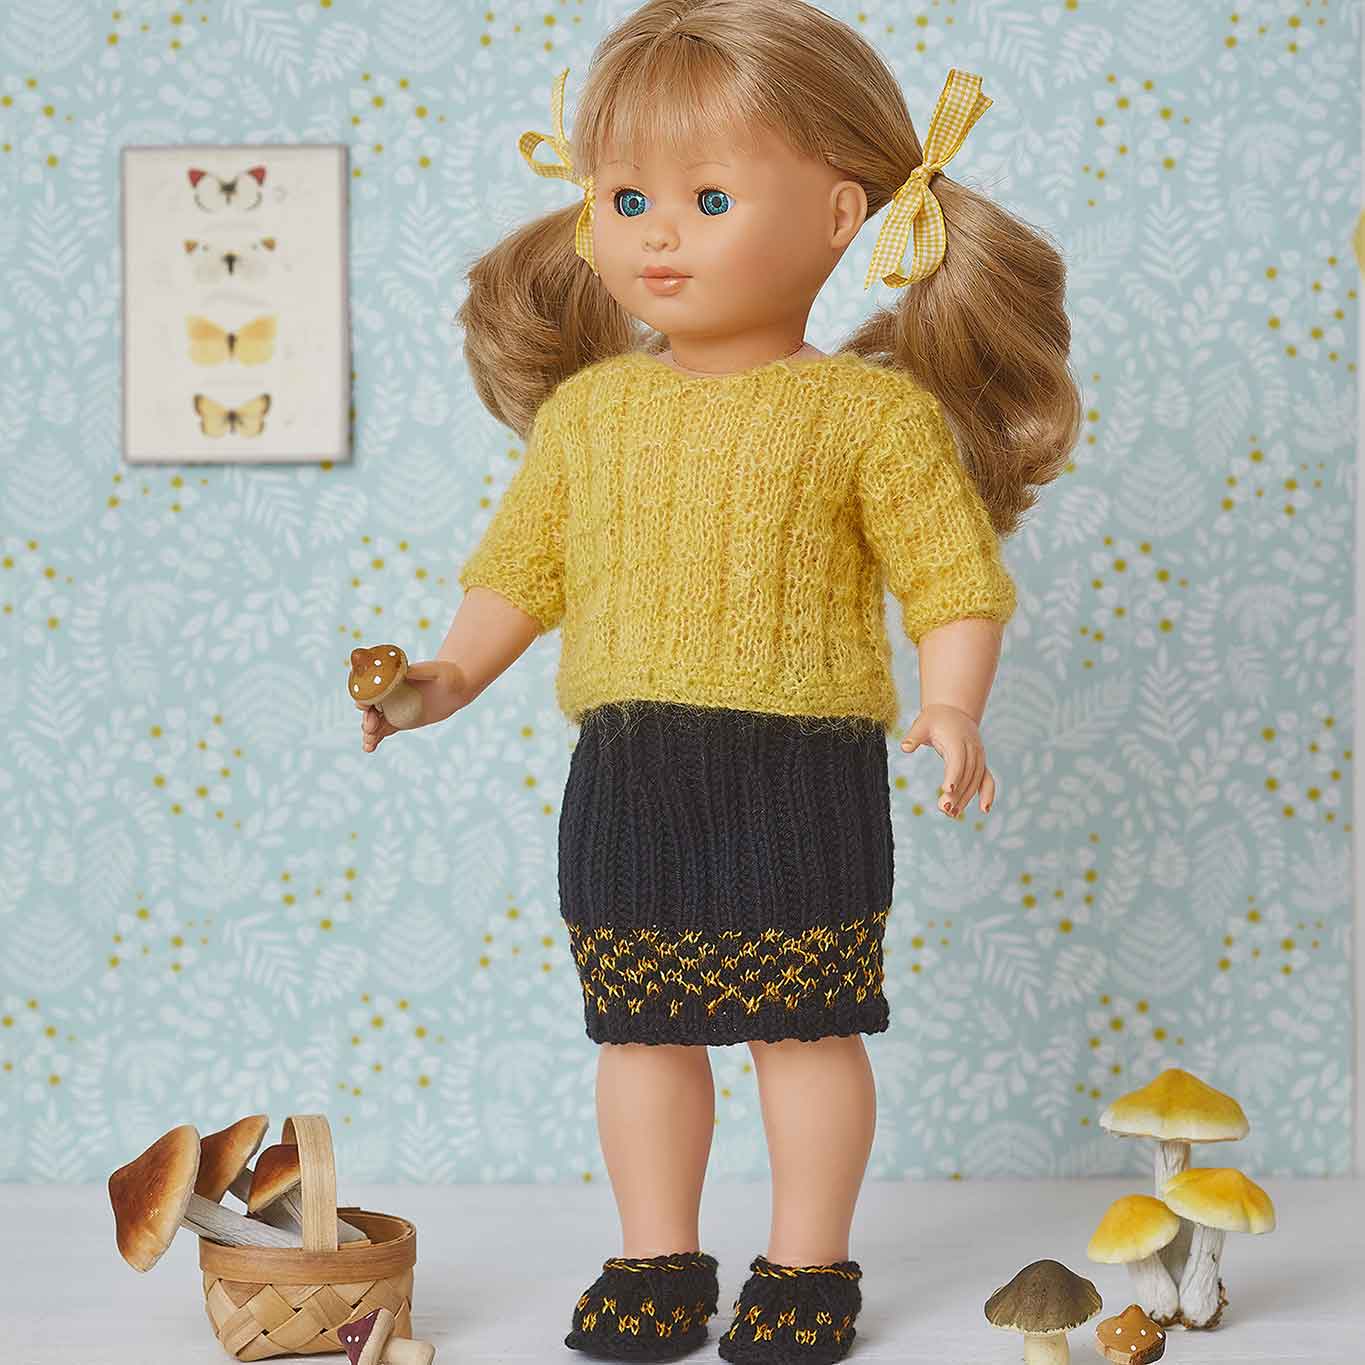 Tricoter une robe pour poupée - Une pelote et deux aiguilles